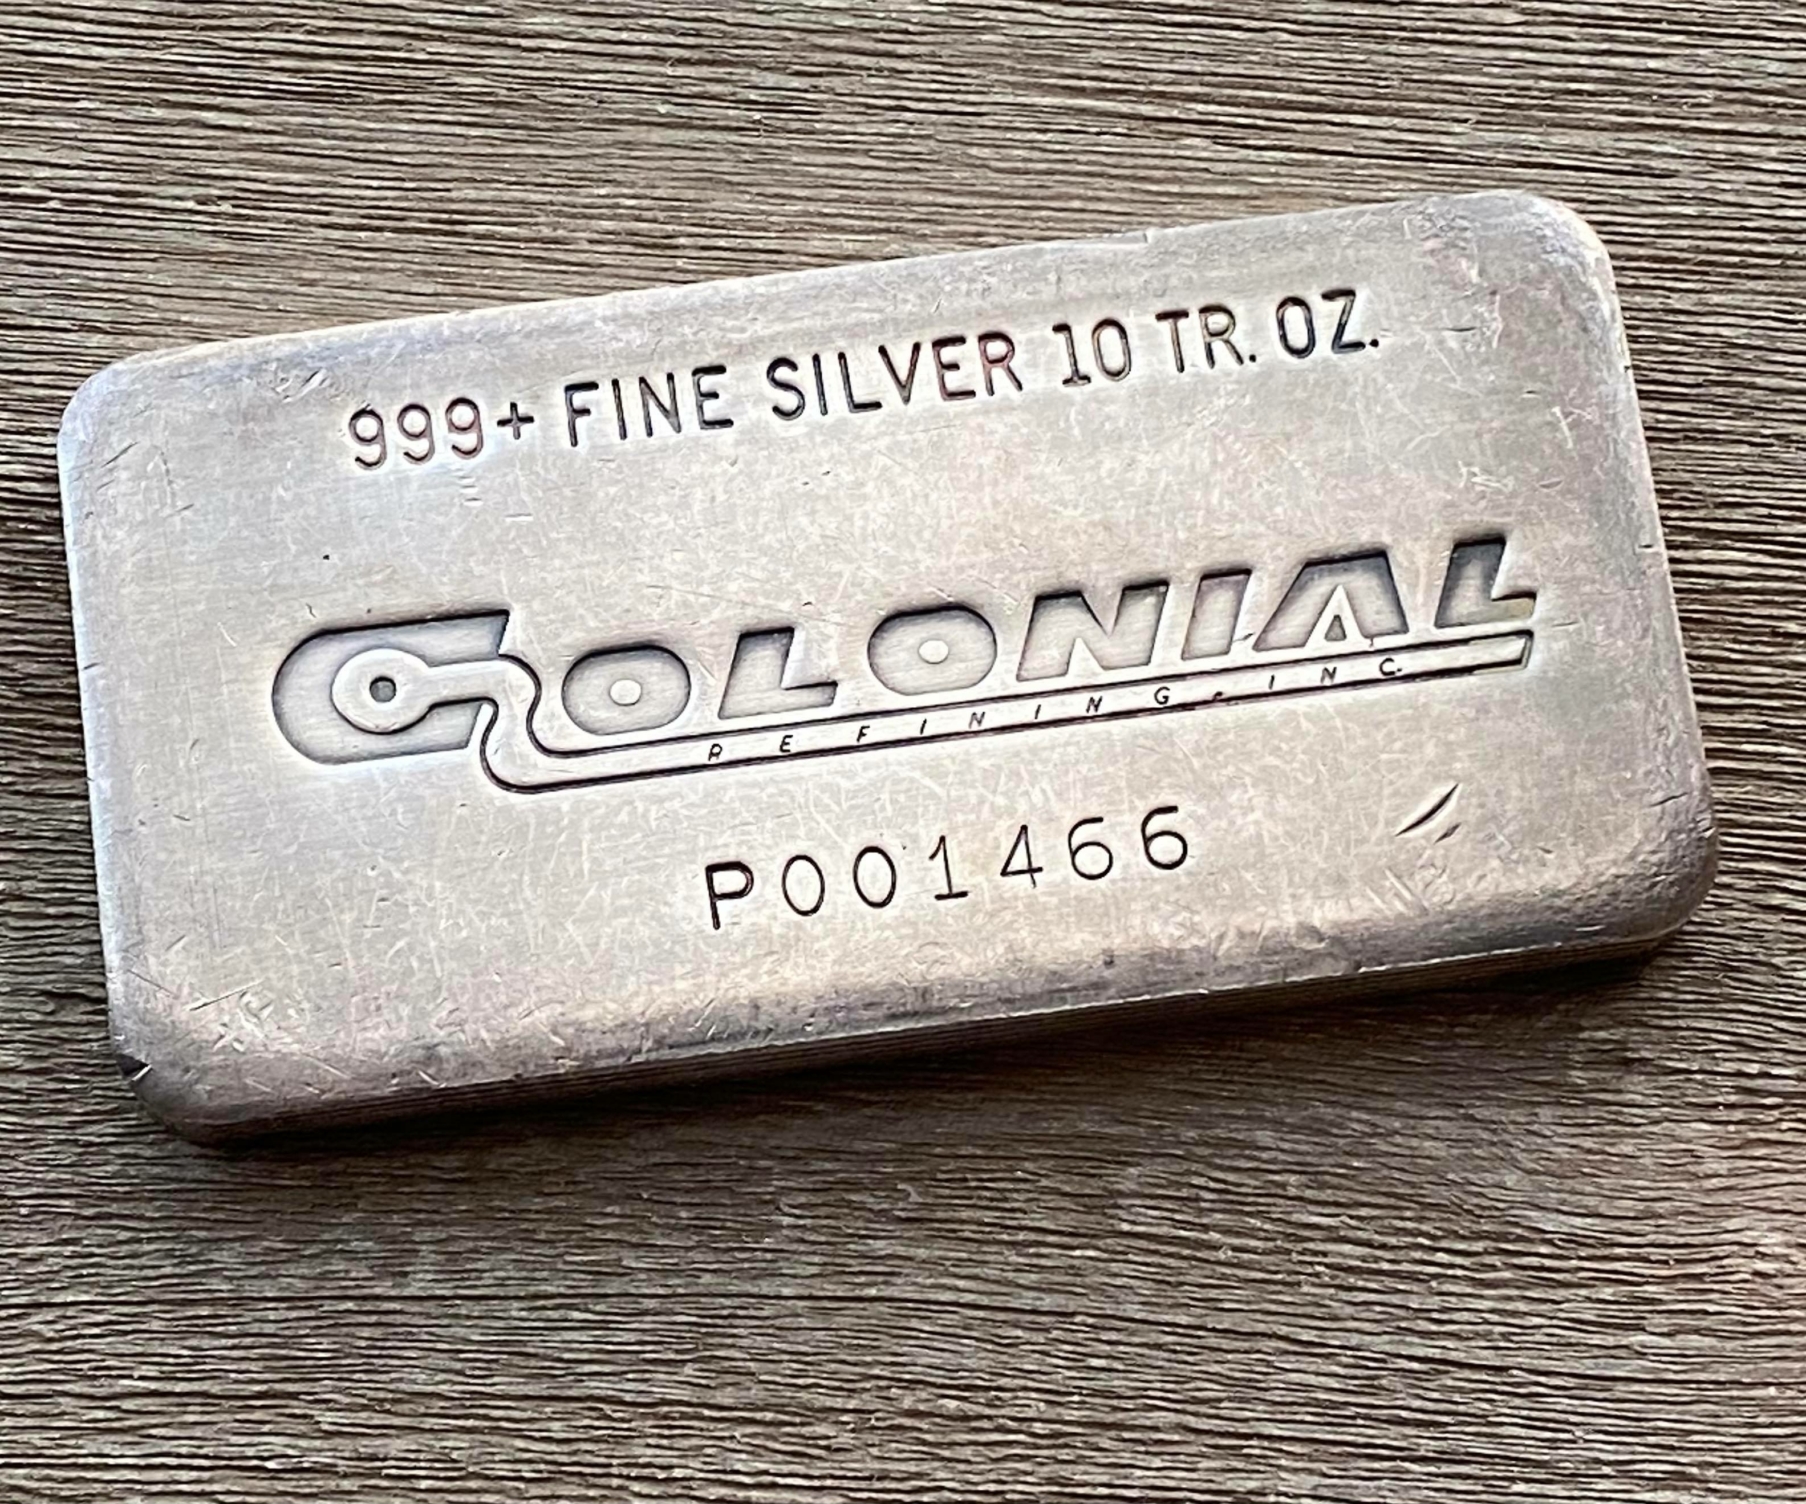 Colonial vintage silver hallmark